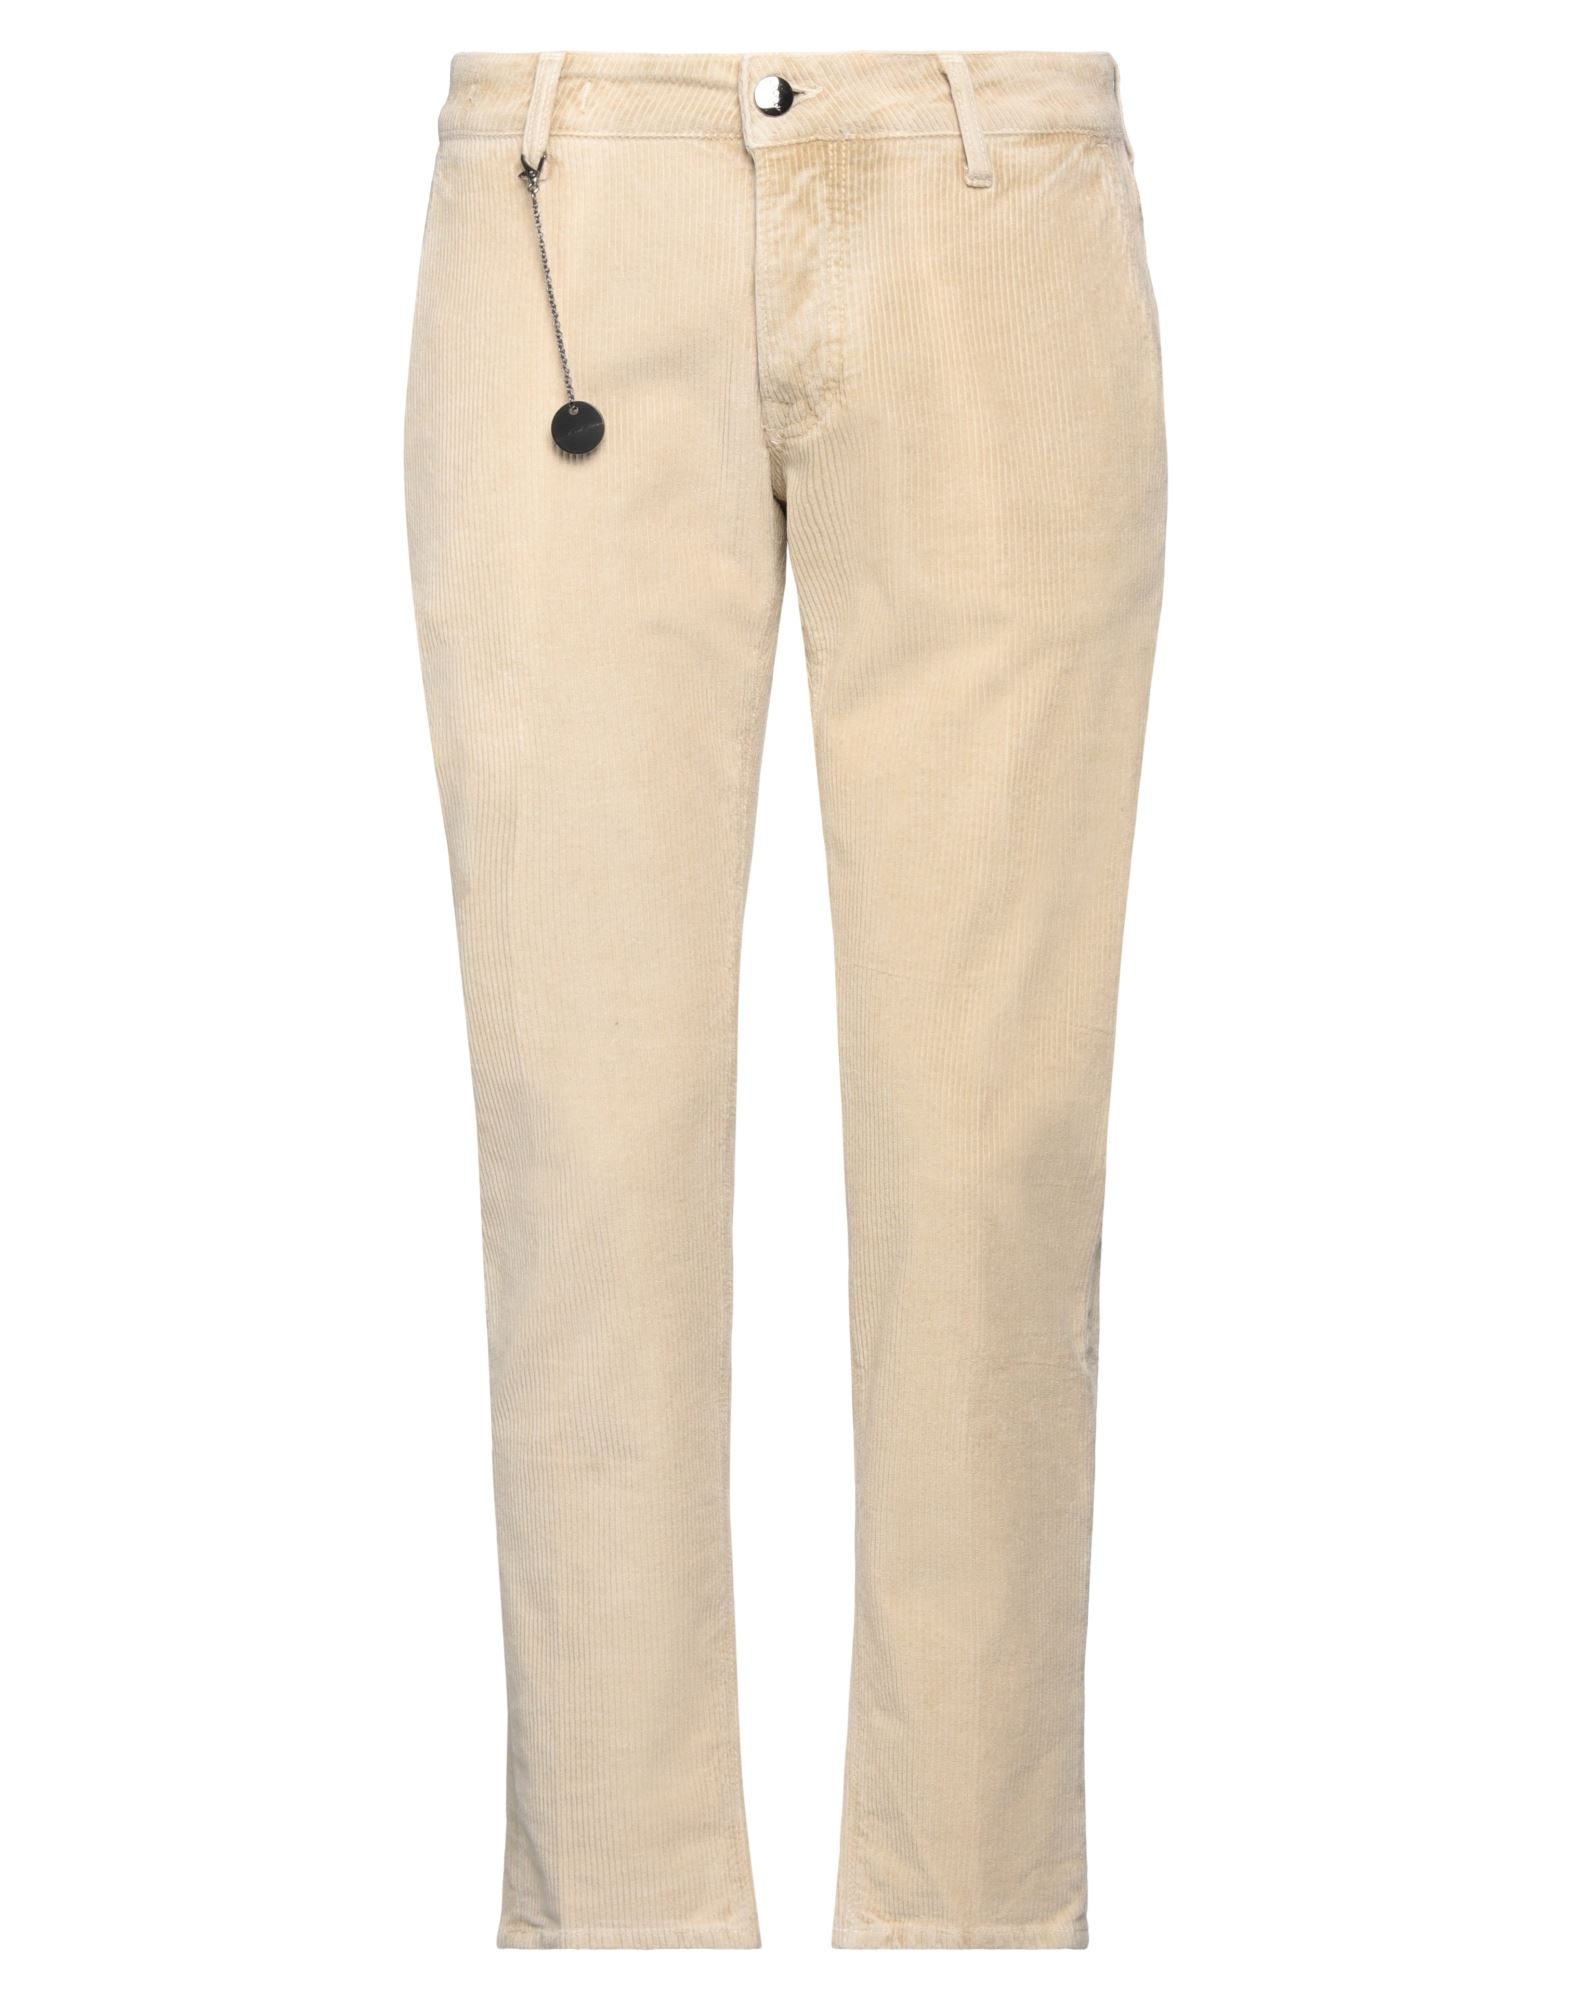 Mc Denimerie Man Pants Beige Size 40 Cotton, Polyester